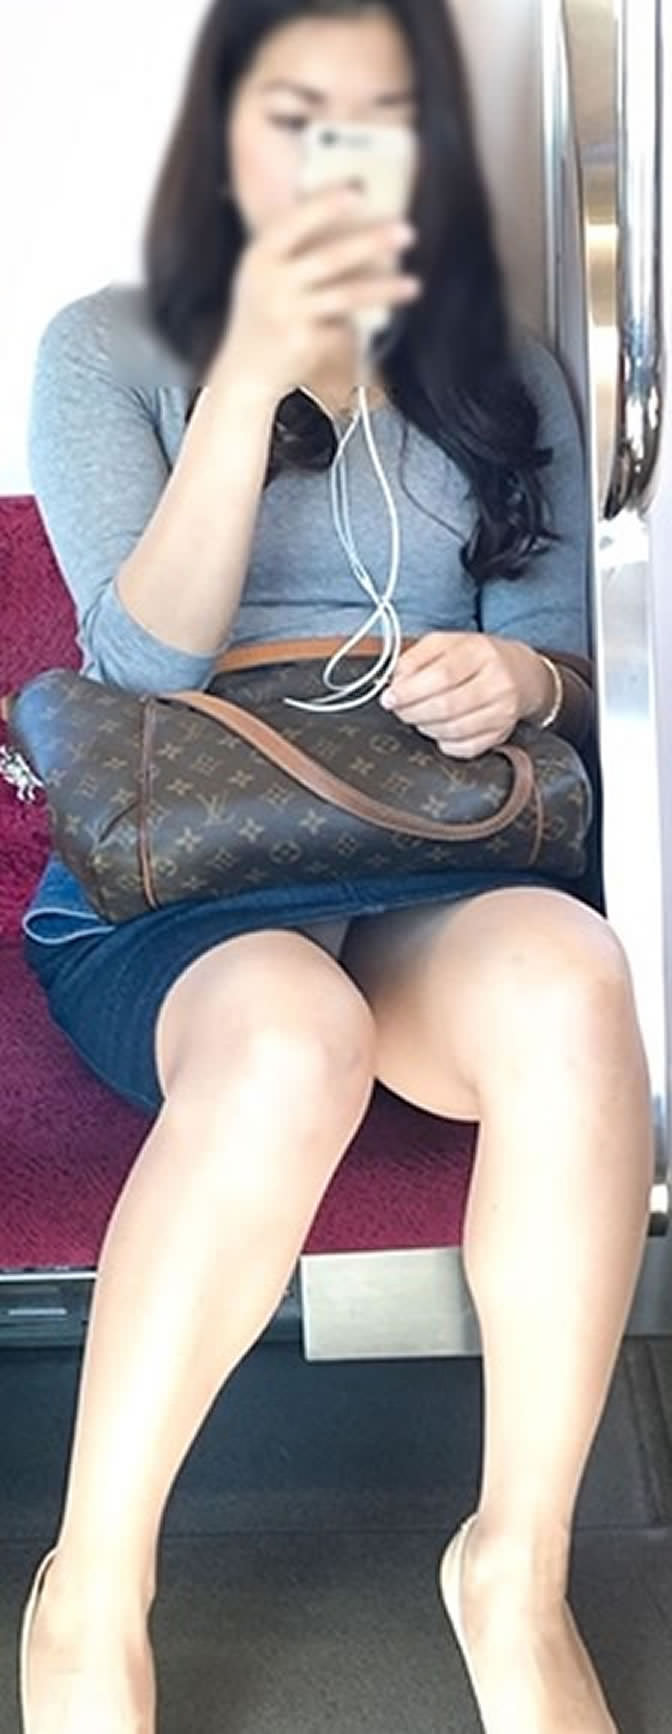 【電車内盗撮エロ画像】電車内でパンチラしている女子見つけたから撮ったったｗ 43